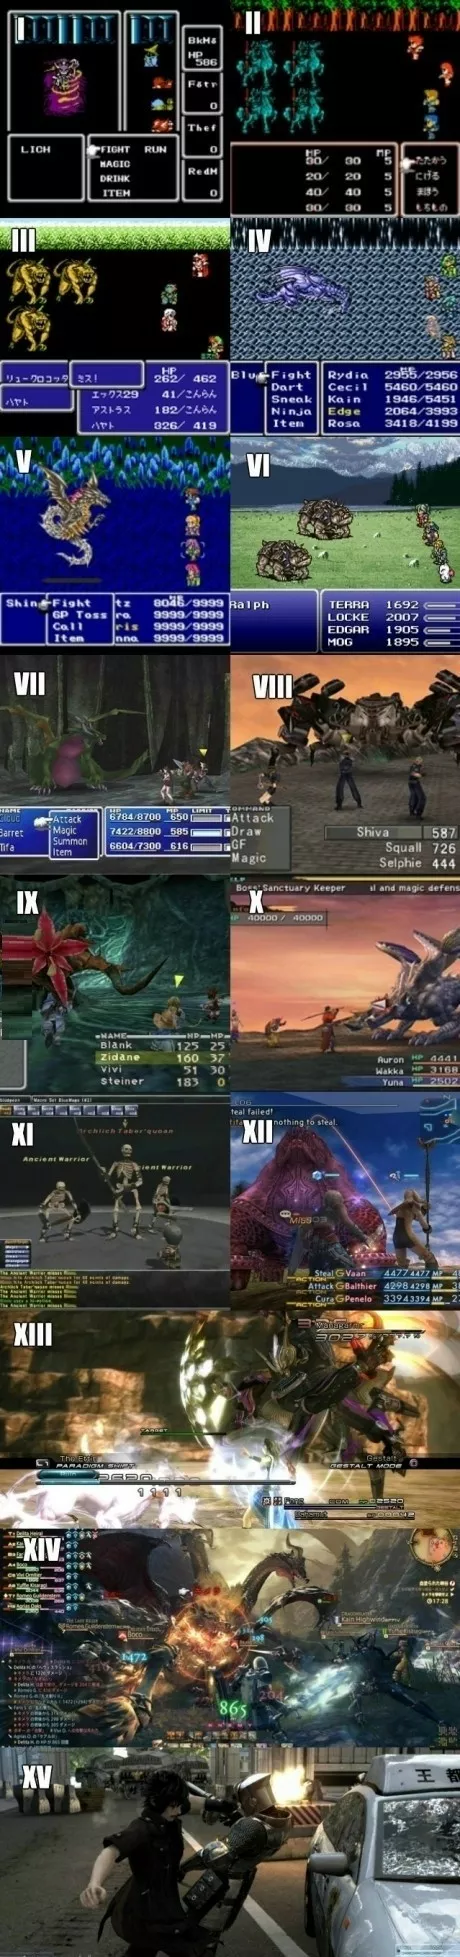 Evolución gráfico del Final Fantasy